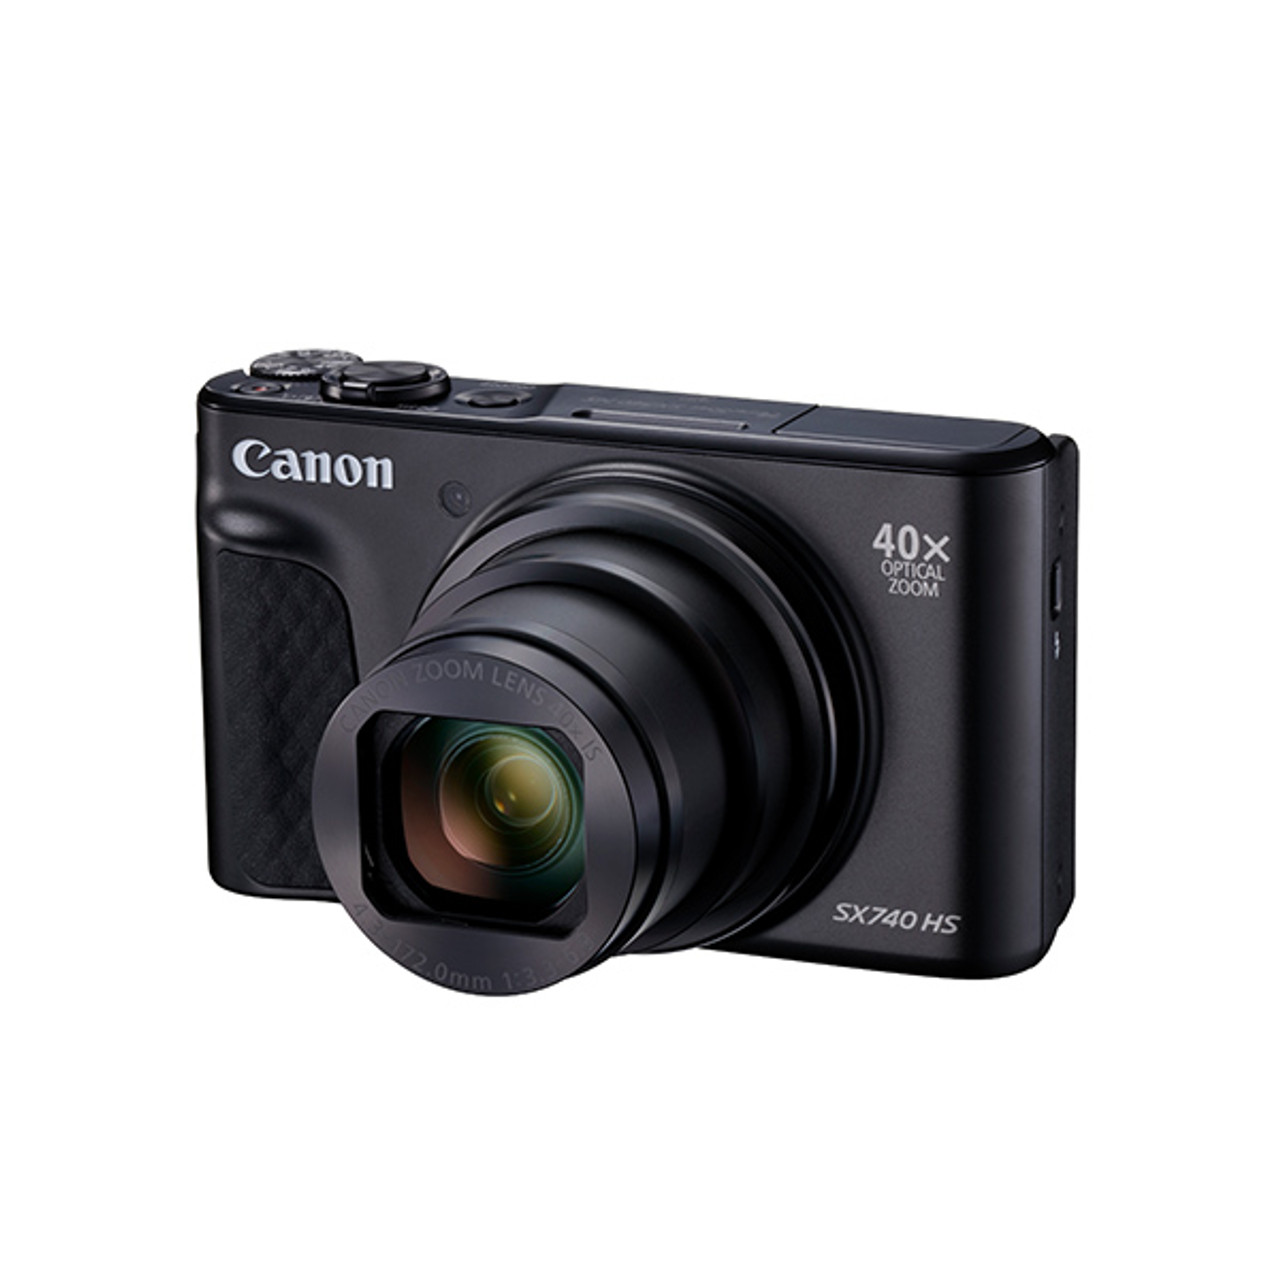 Canon Powershot SX740HS with Case Black